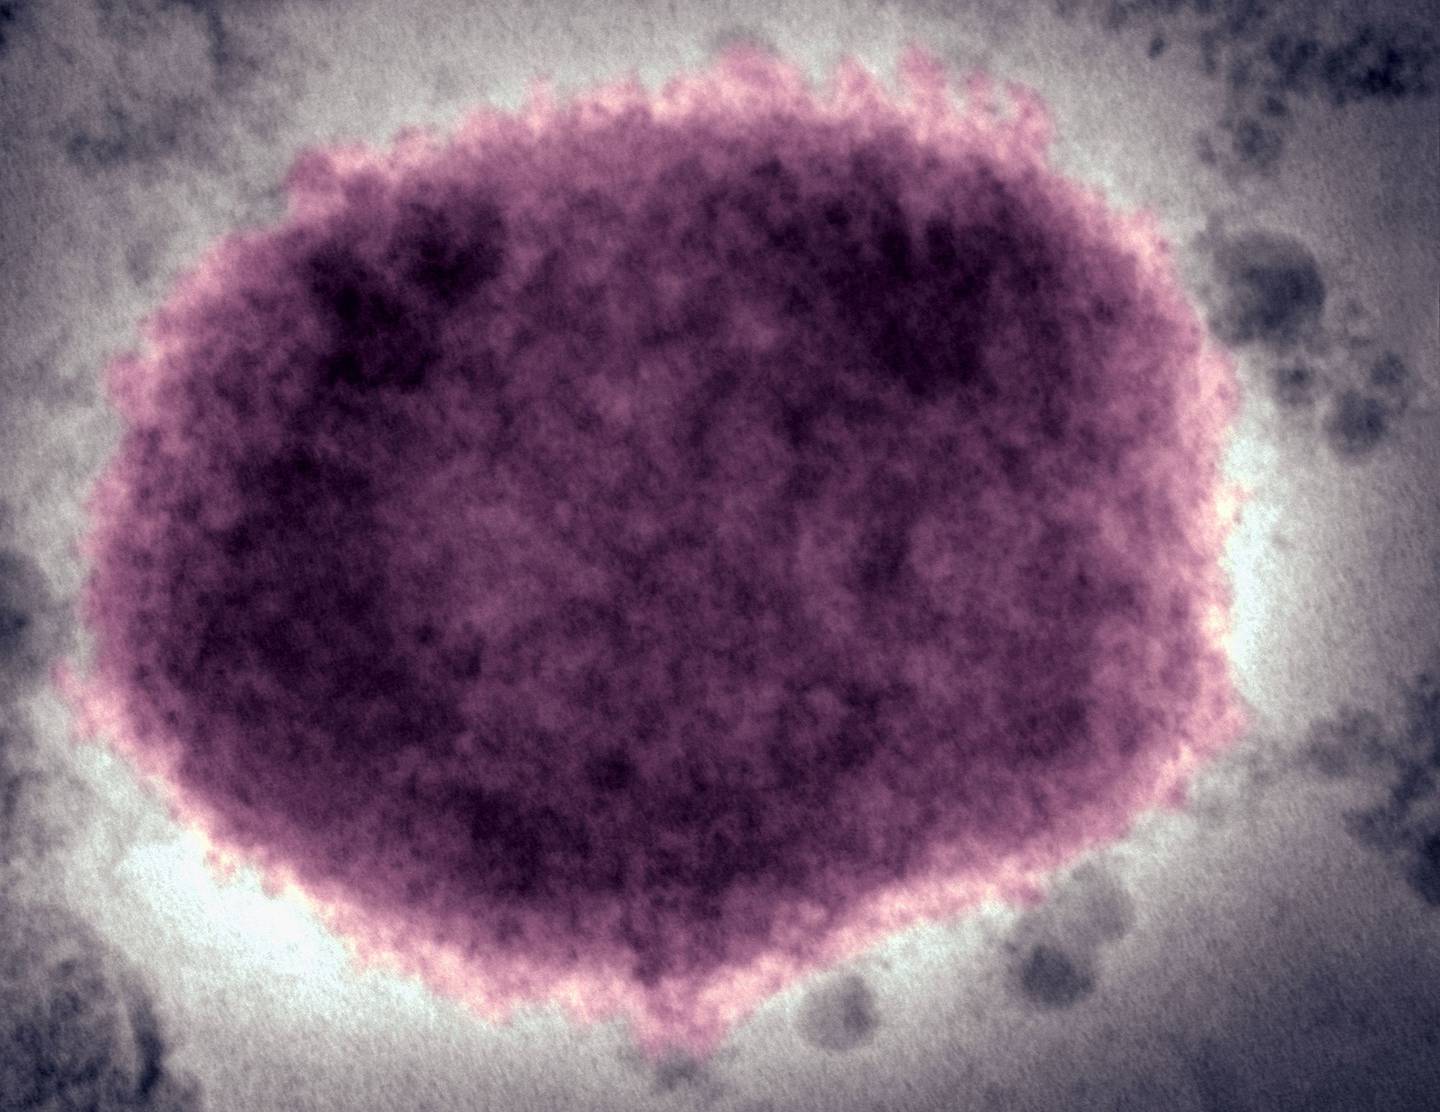 Virus de la viruela del mono presente en el fluido vesicular humano.